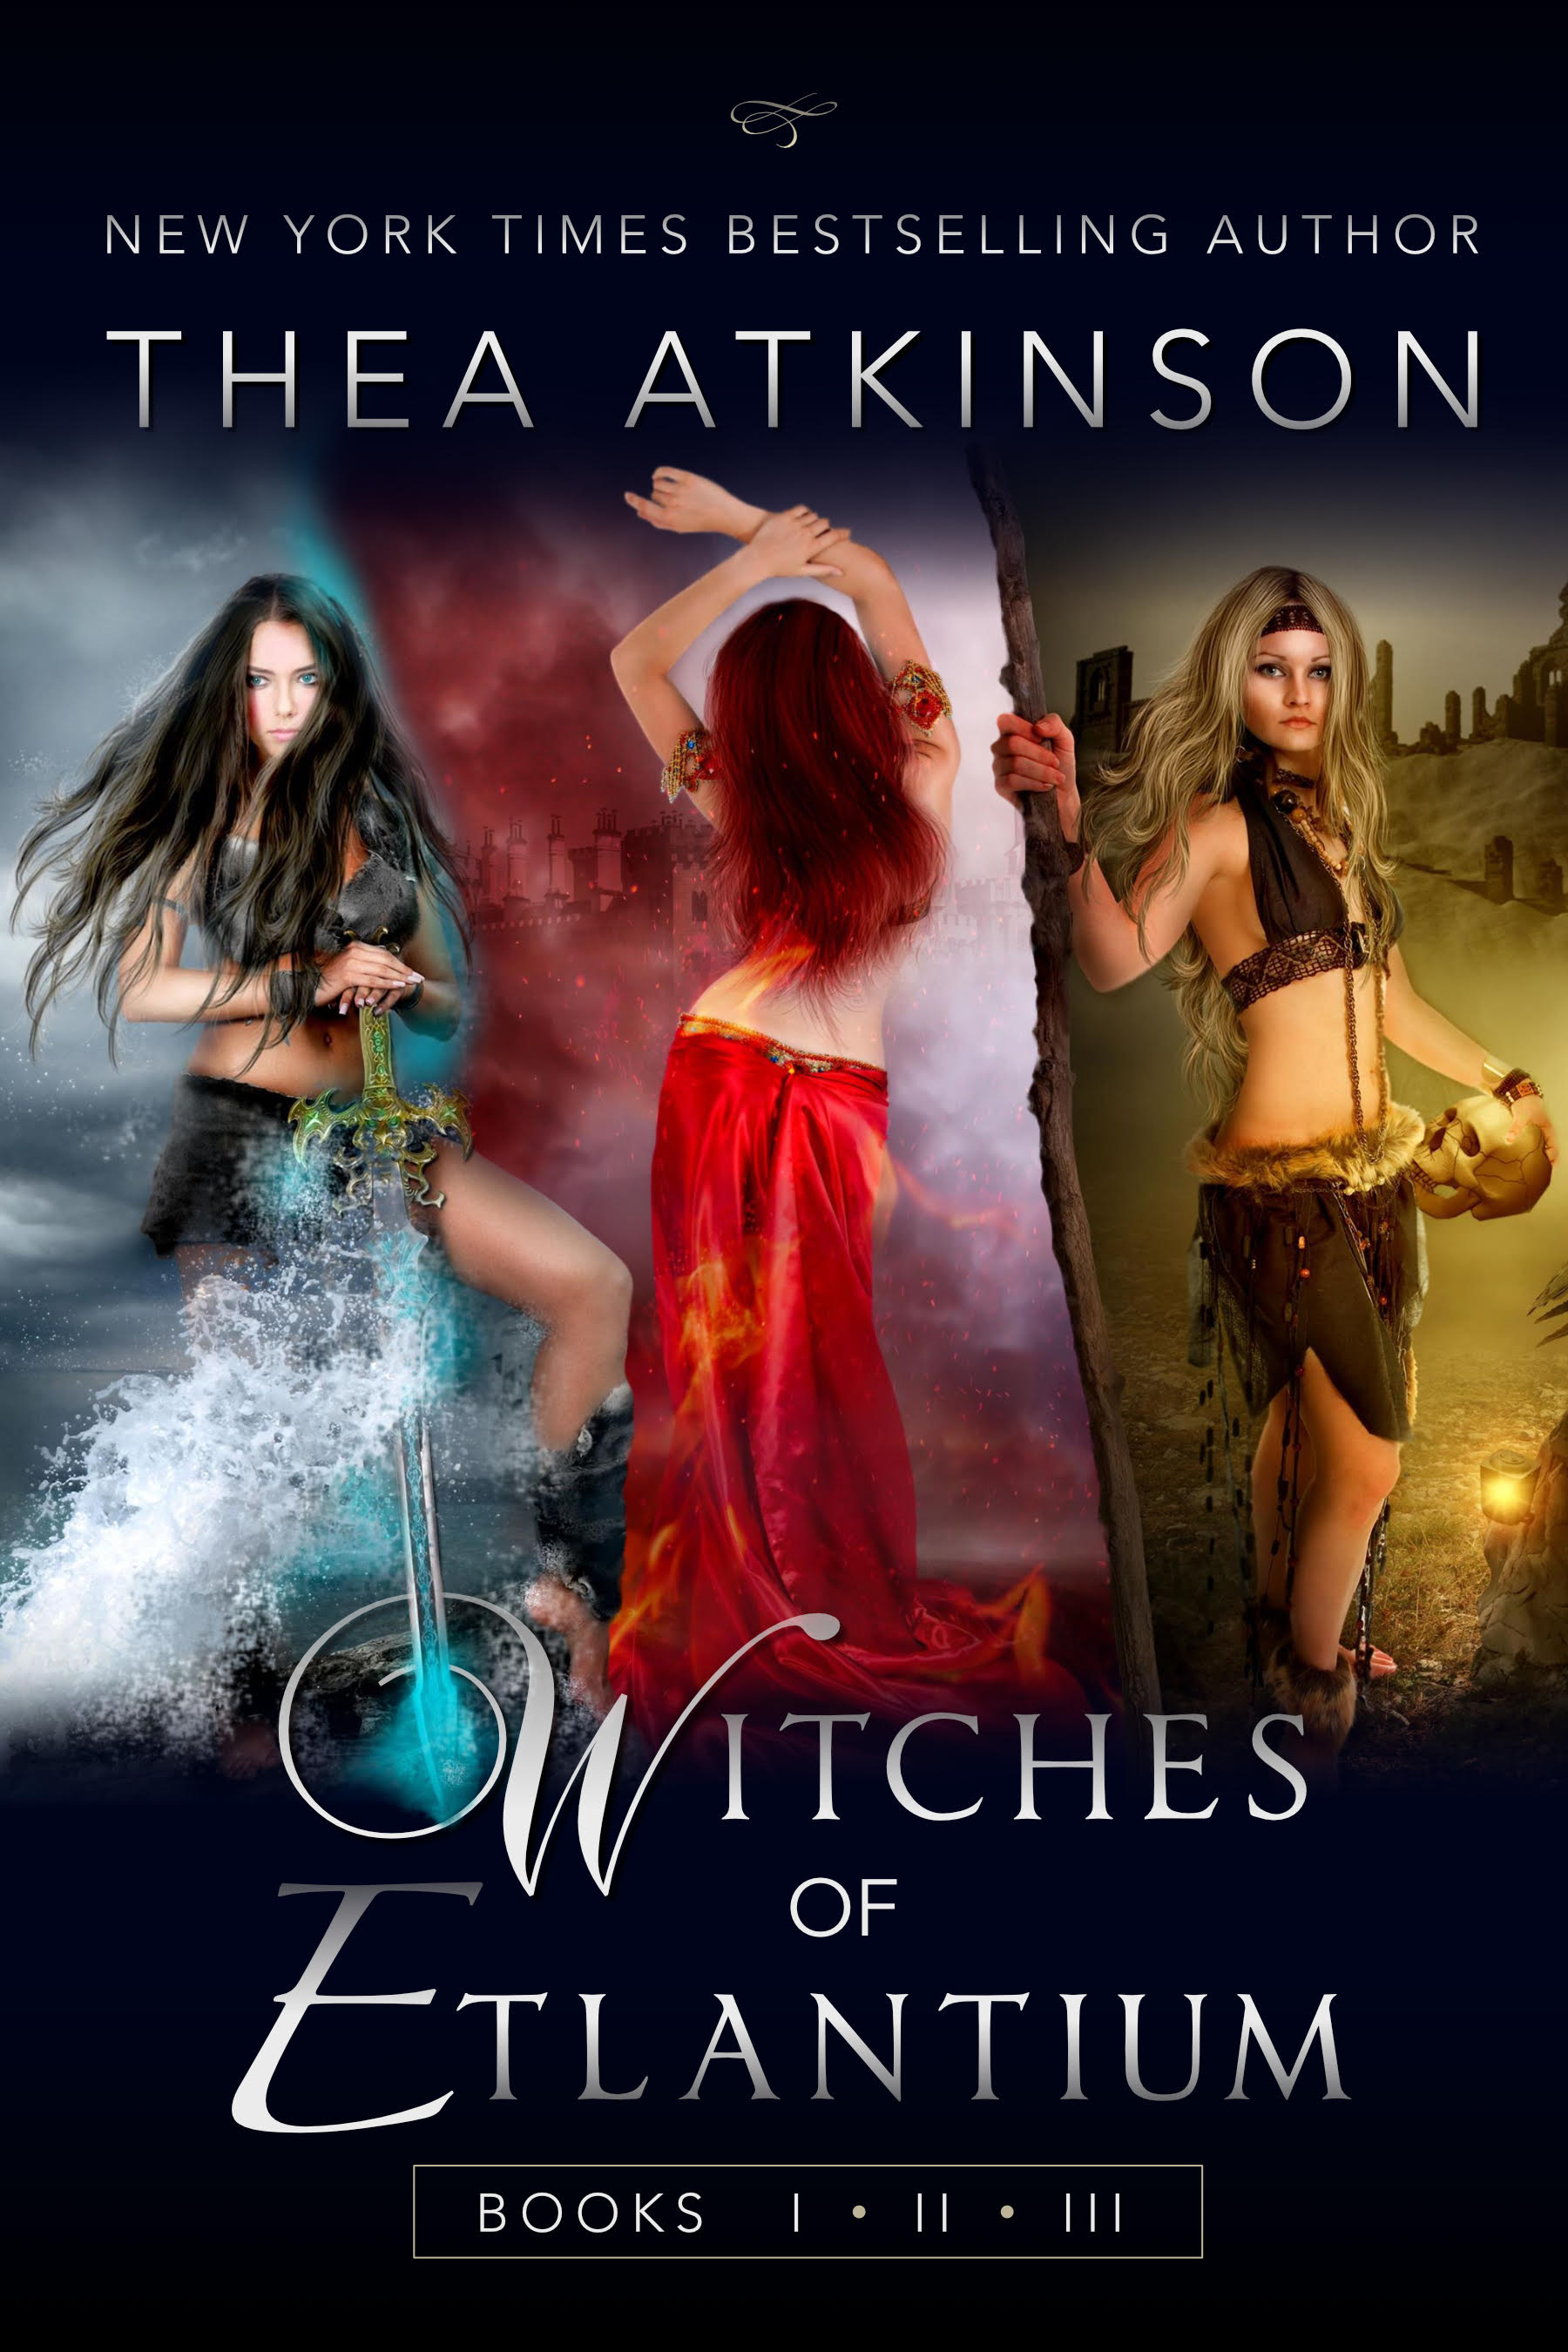 Witches of Etlantium Books 1-3